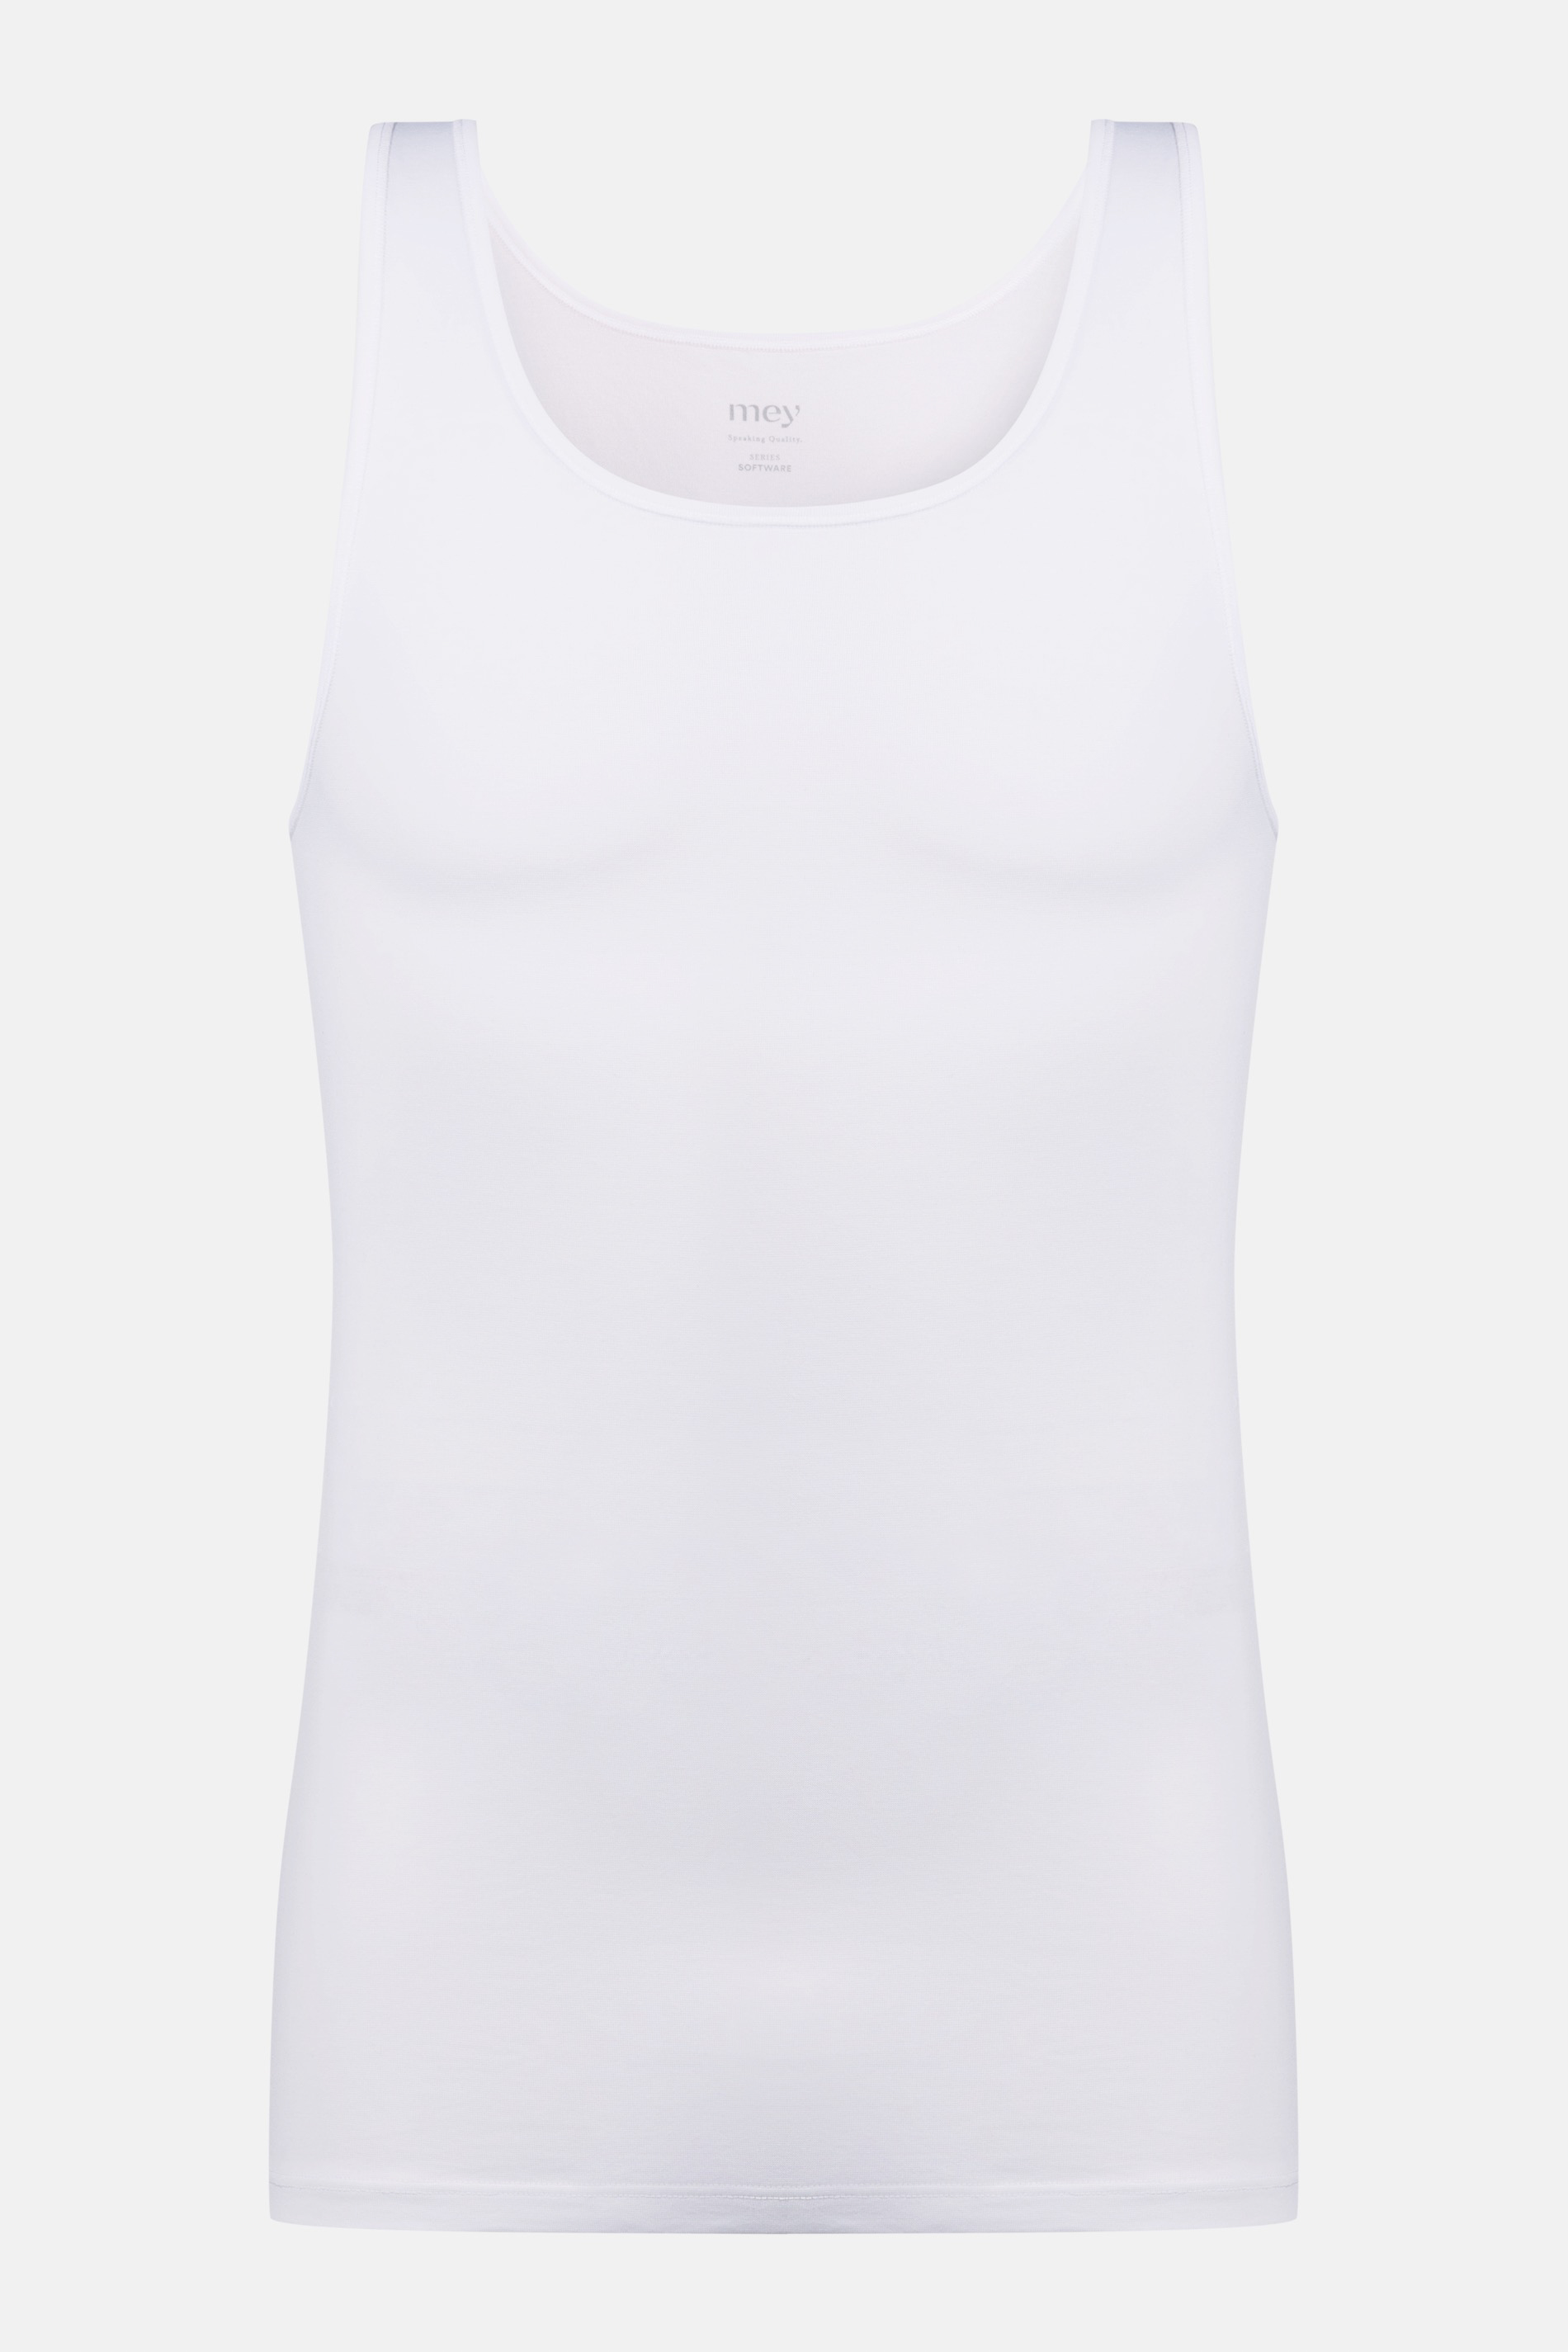 Athletic-Shirt Weiss Serie Software Freisteller | mey®